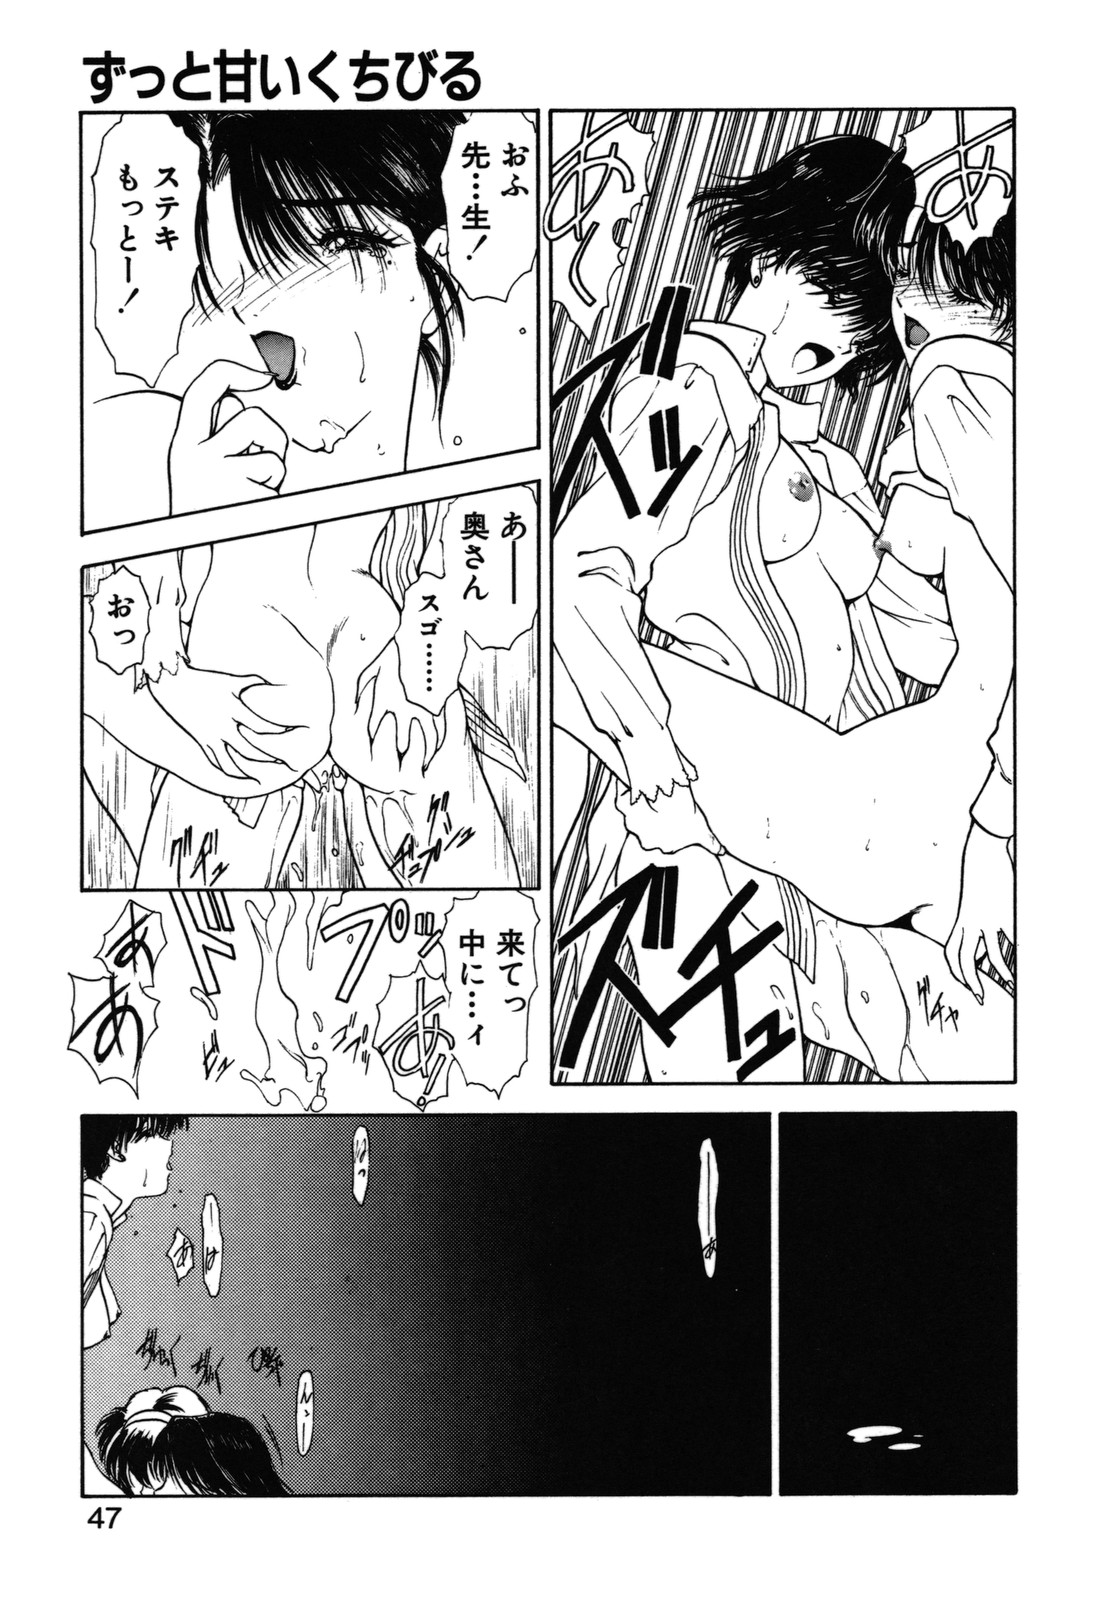 [Utatane Hiroyuki] COUNT DOWN page 48 full